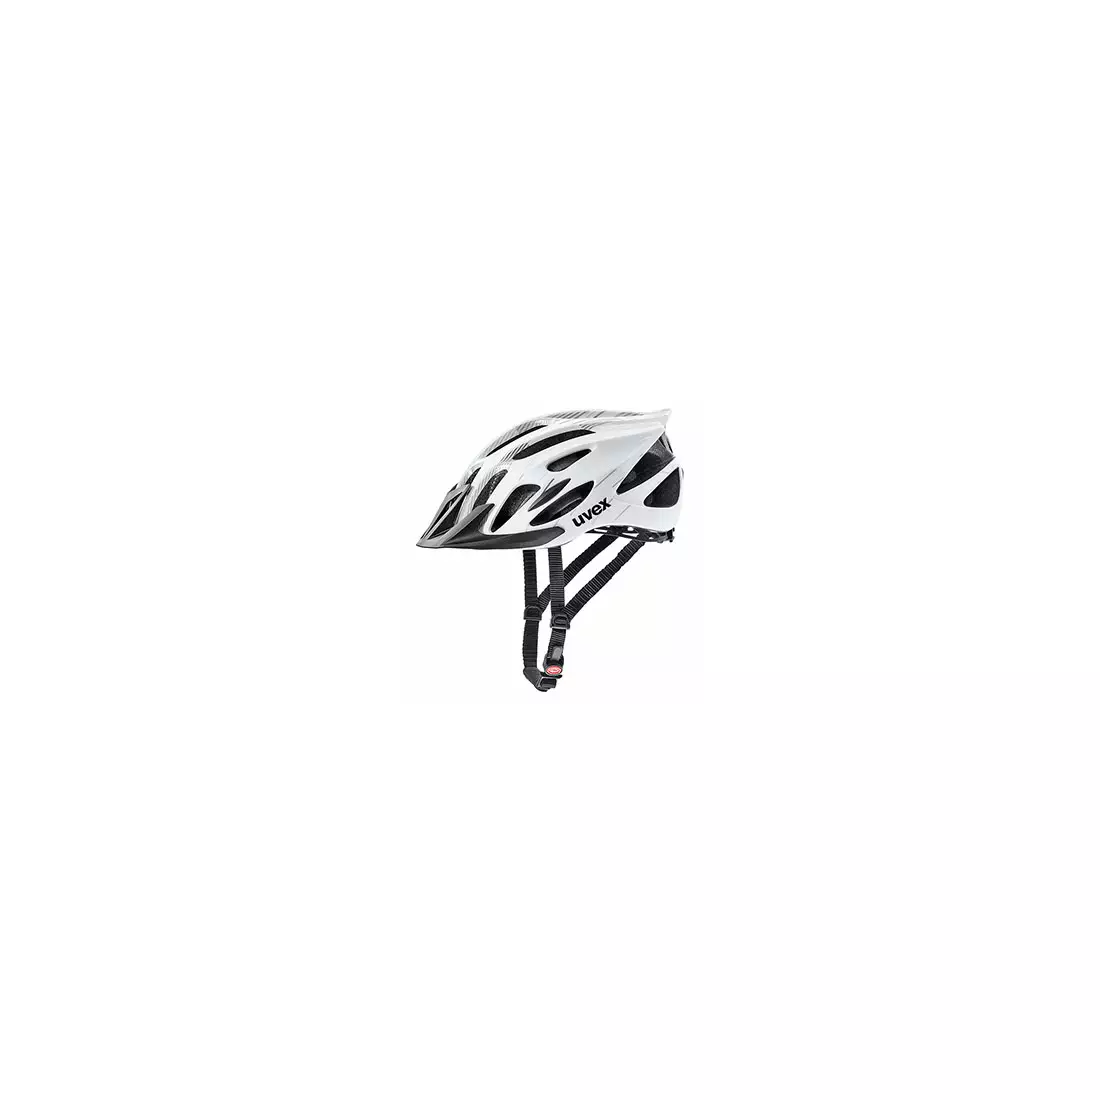 UVEX bicycle helmet FLASH, black and white, 41096602 